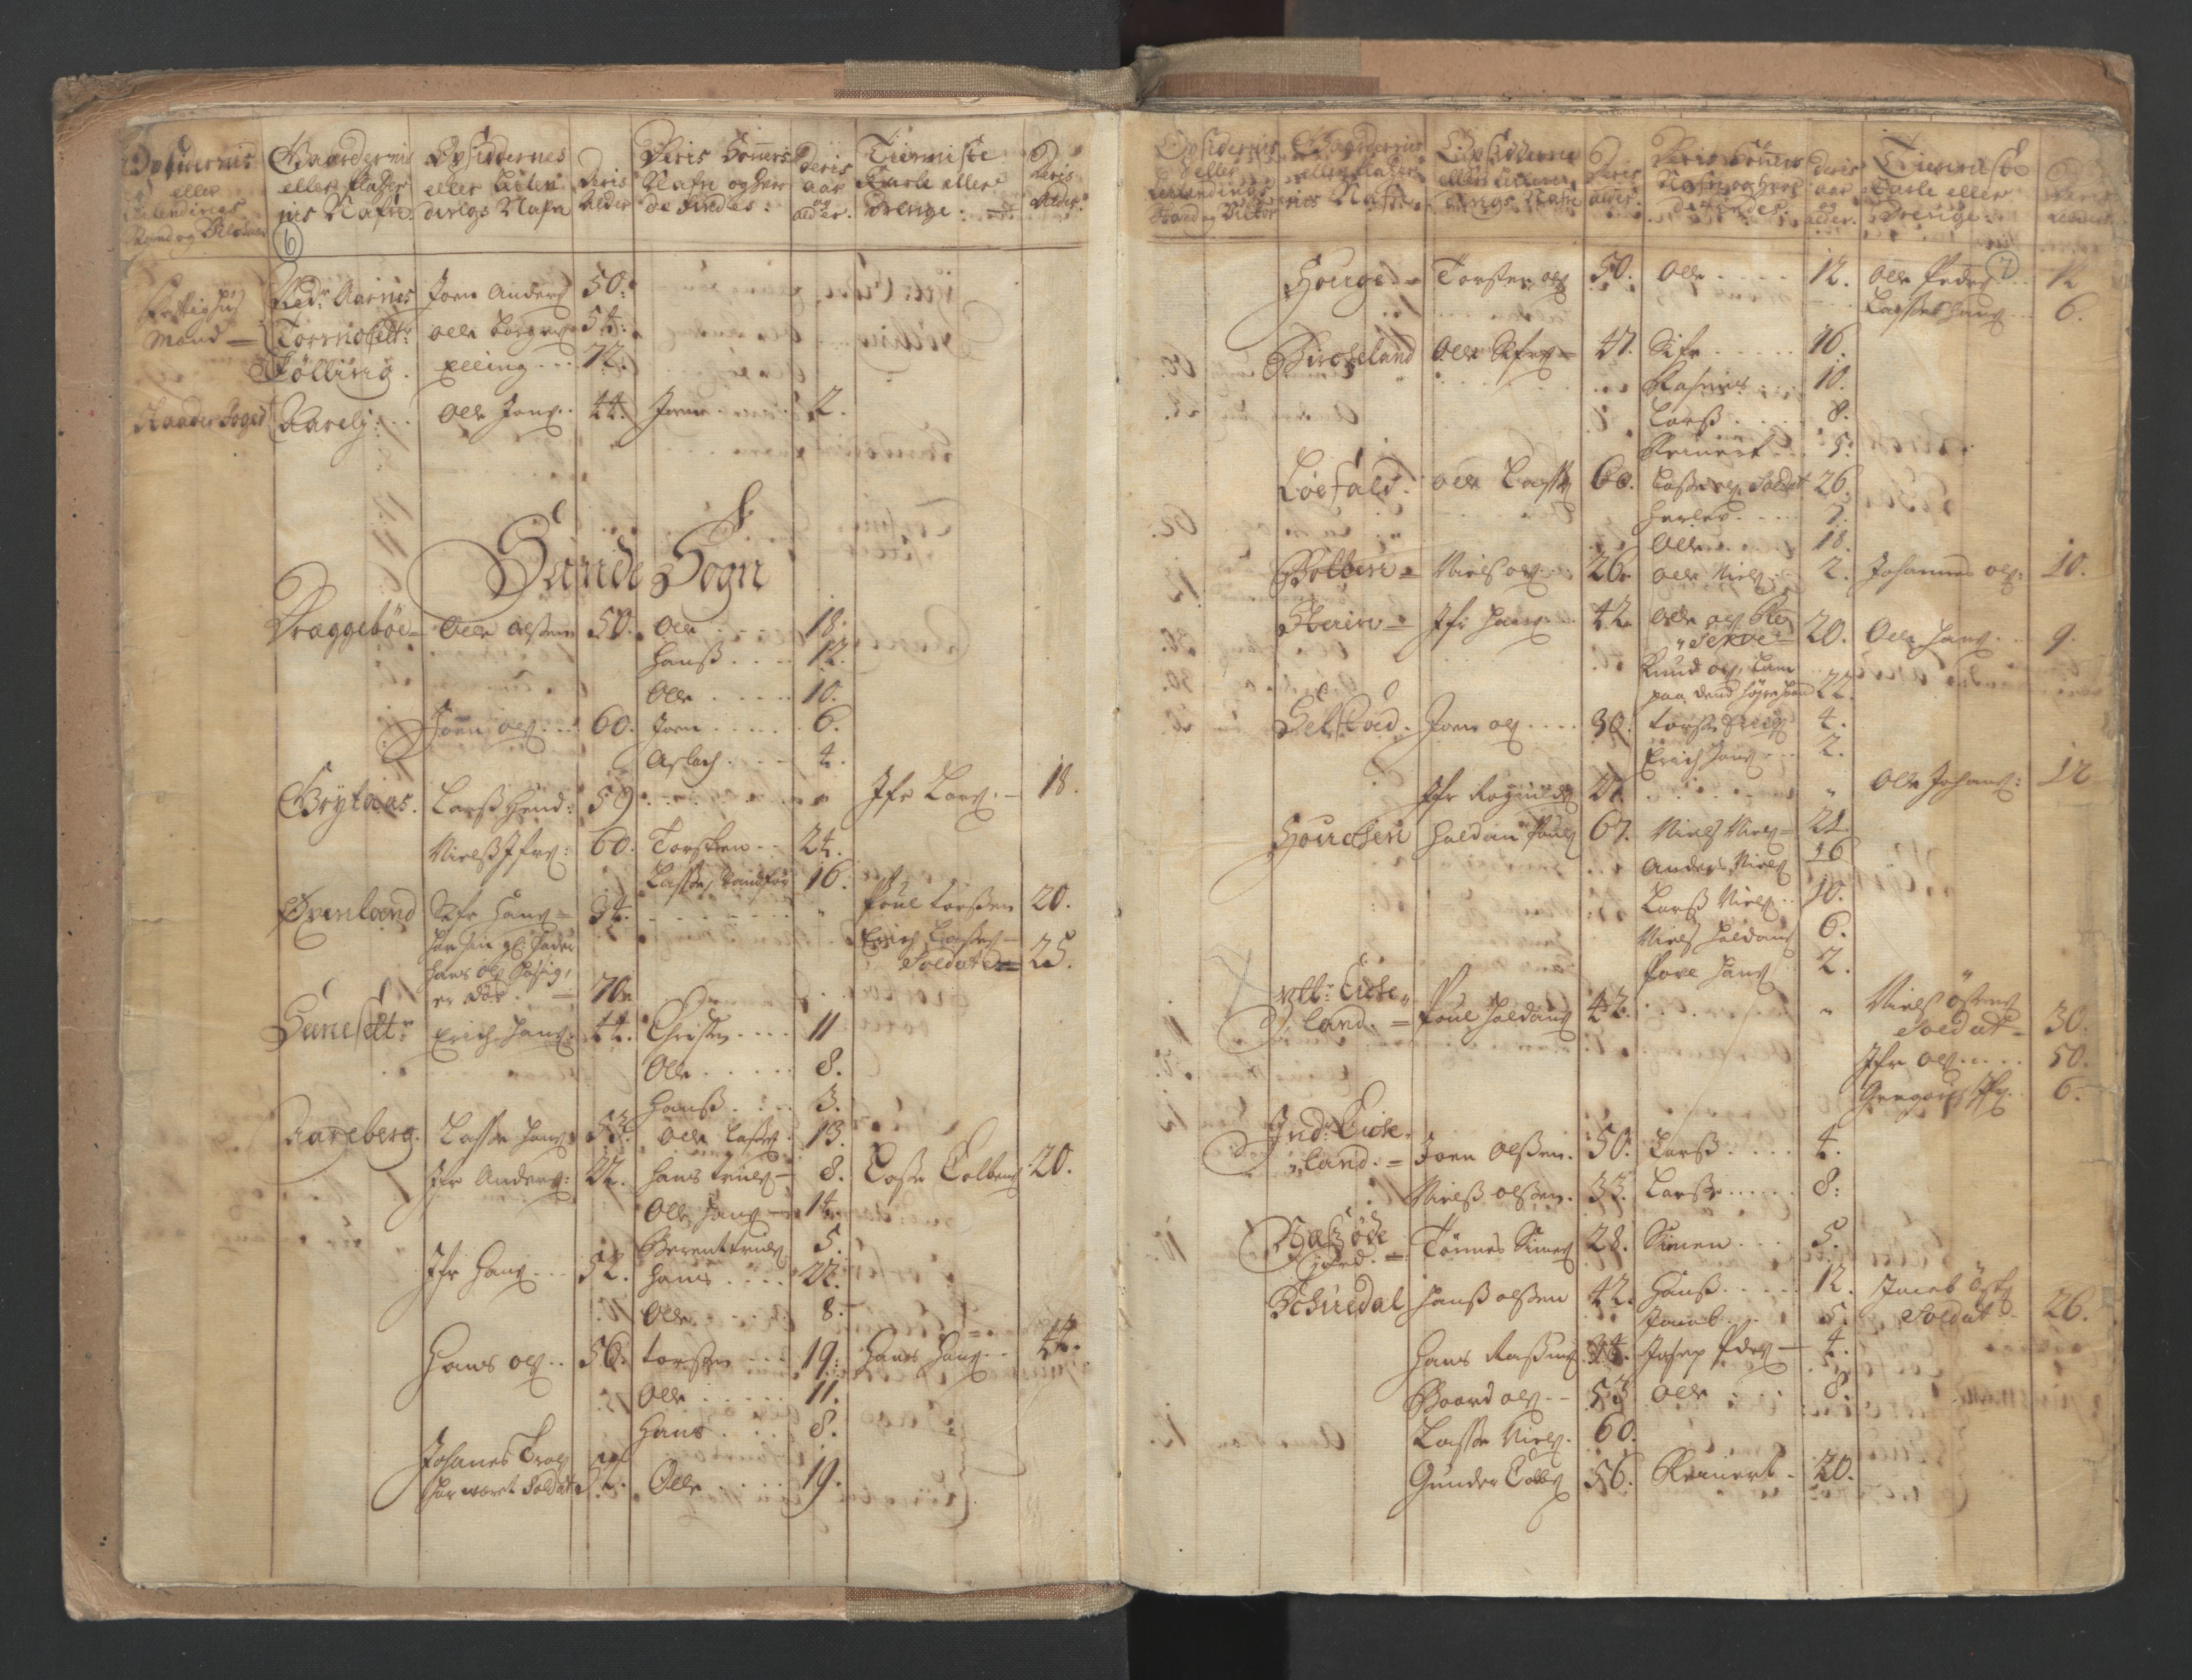 RA, Census (manntall) 1701, no. 9: Sunnfjord fogderi, Nordfjord fogderi and Svanø birk, 1701, p. 6-7